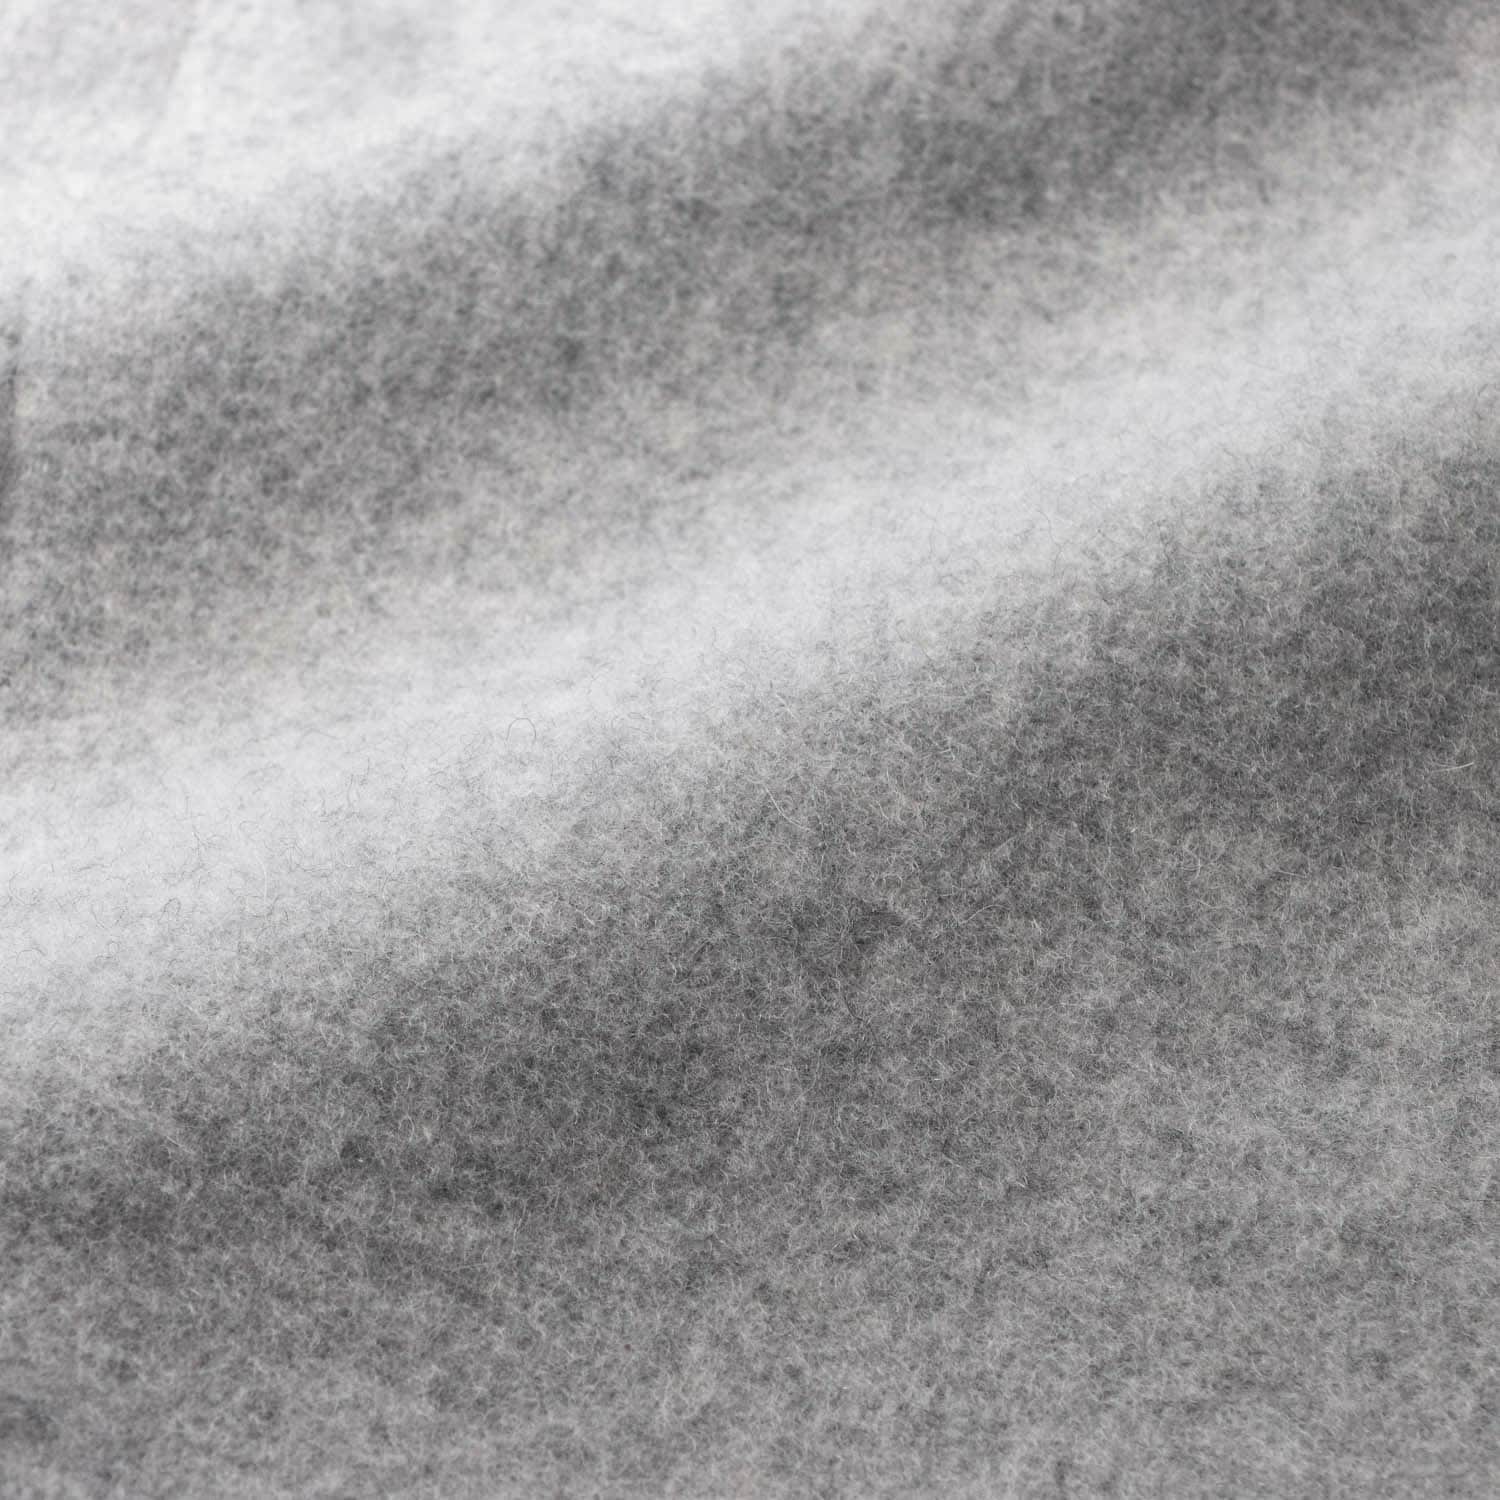 日本製ウール混素材を使用したショートコート(スタイルノート